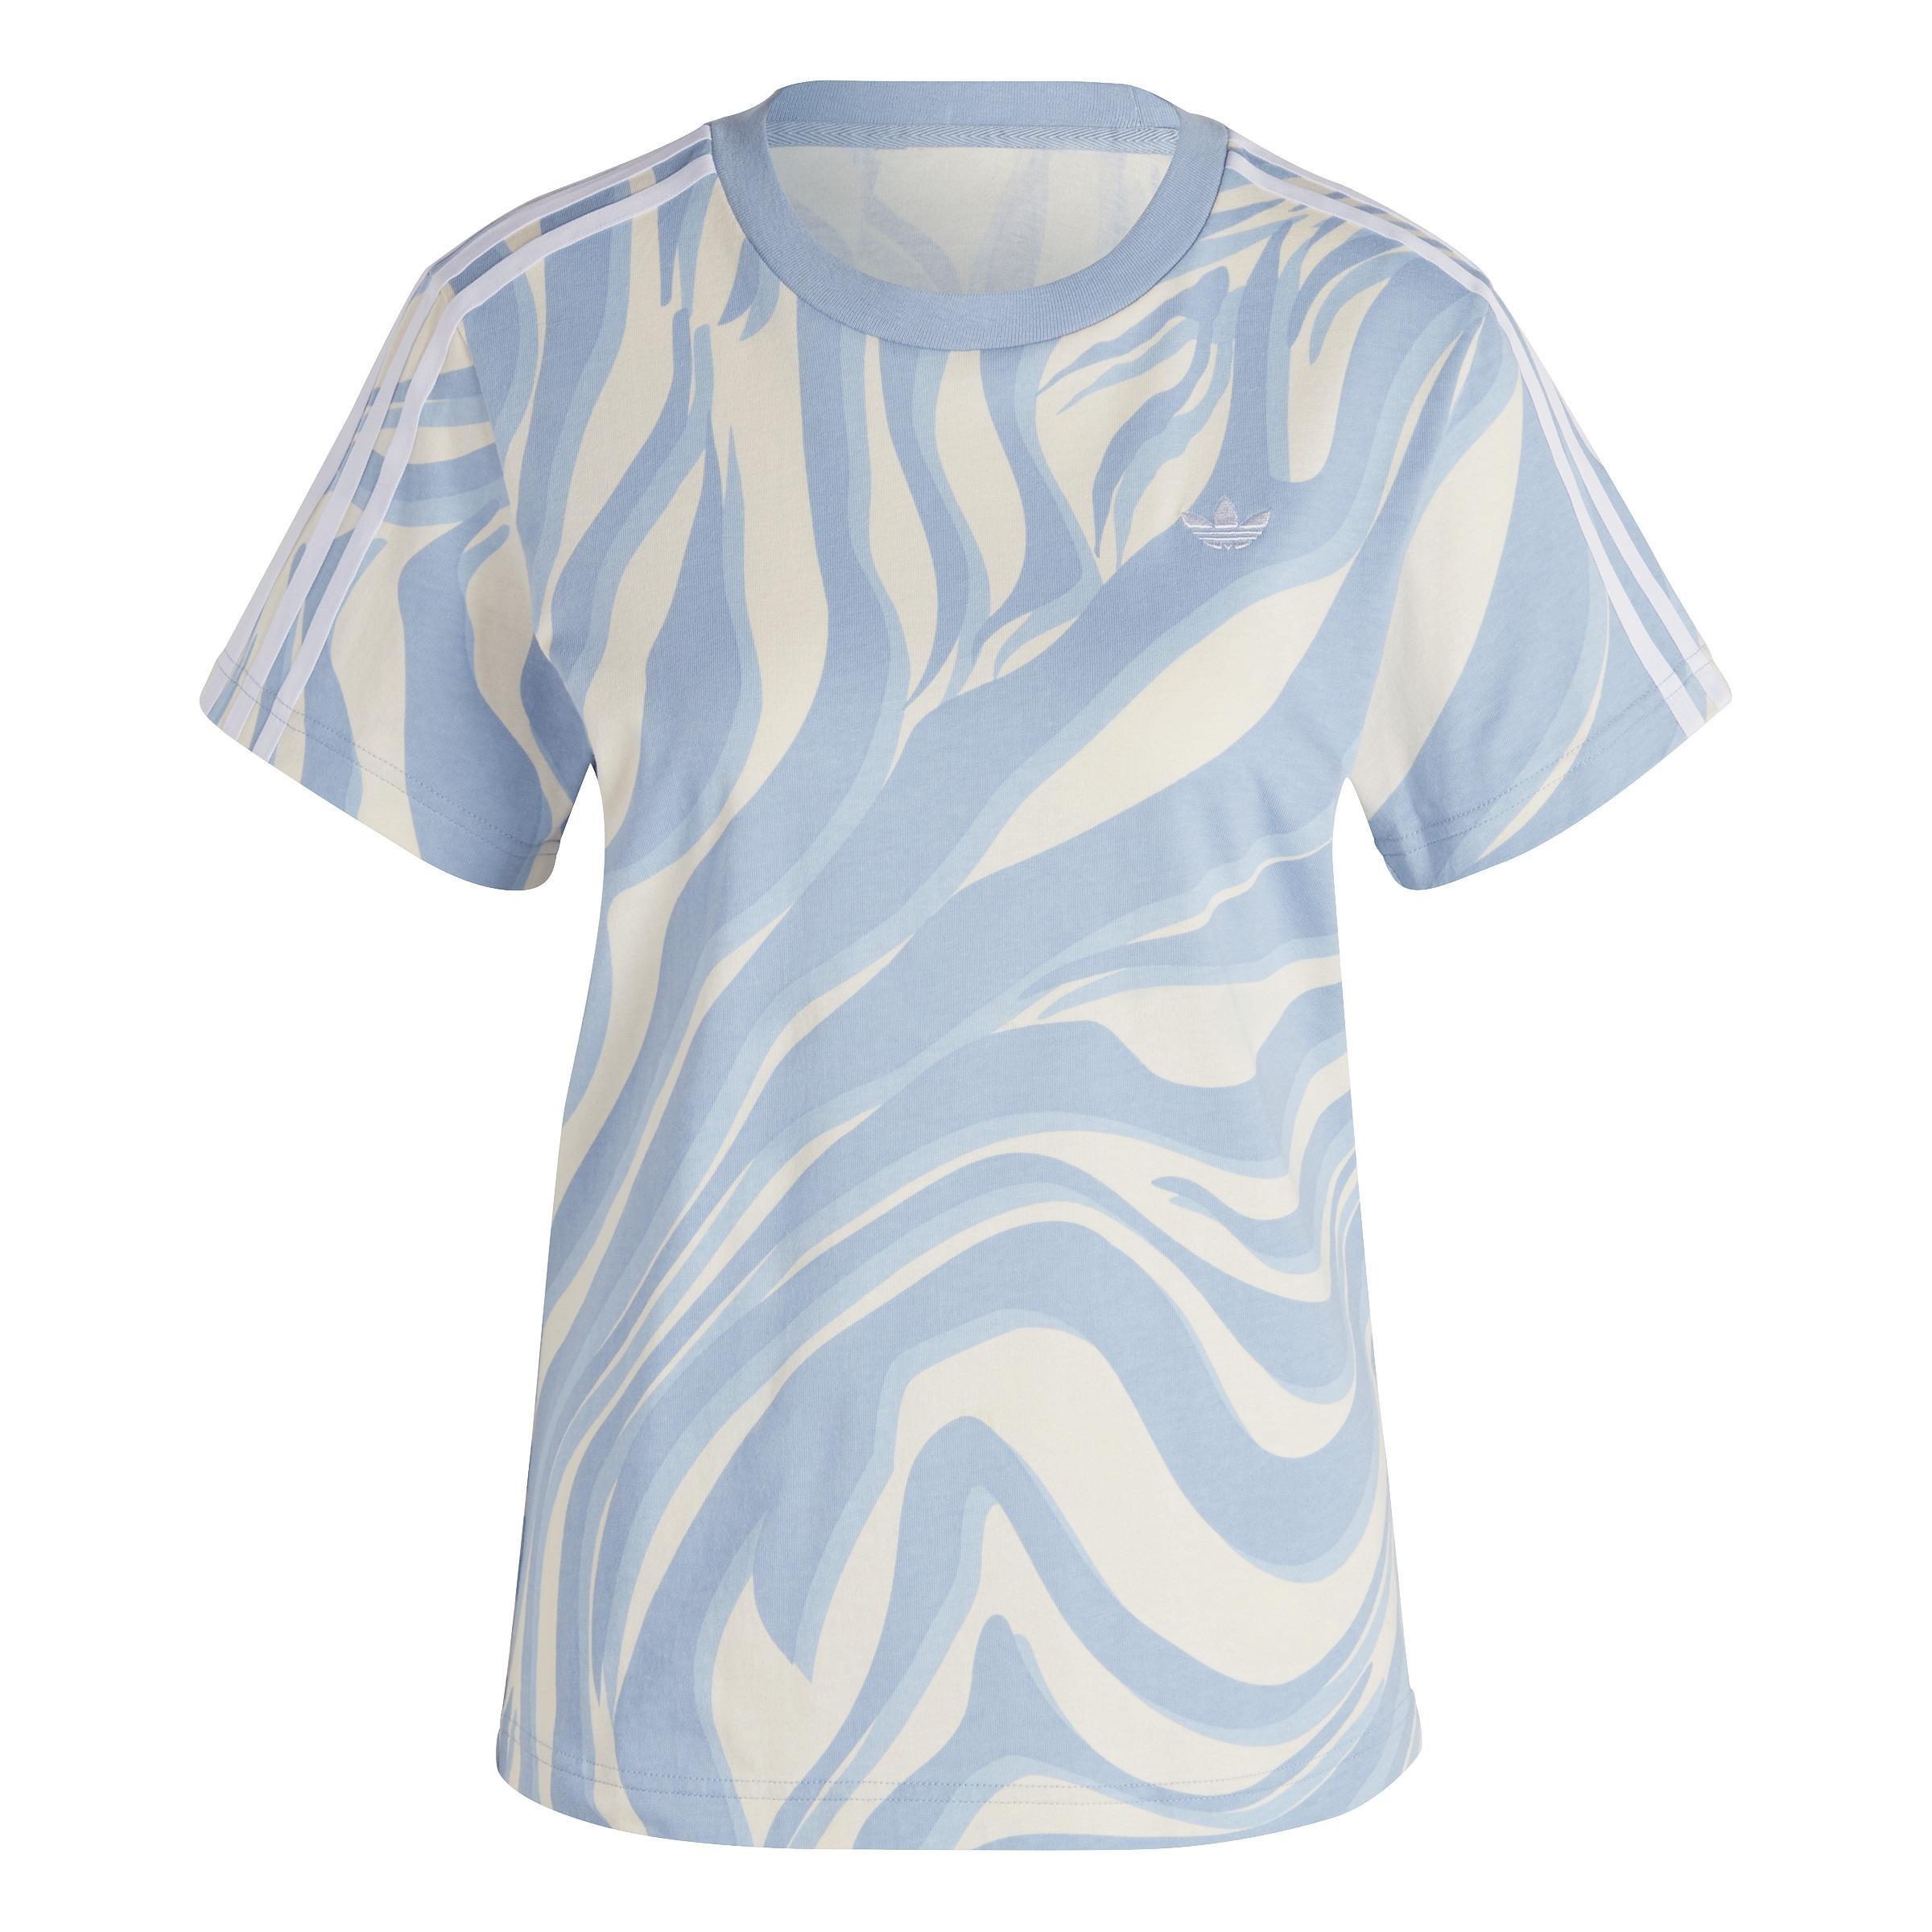 Robar a Magnético No autorizado Women Abstract Allover Animal Print T-Shirt, Blue | adidas Lebanon